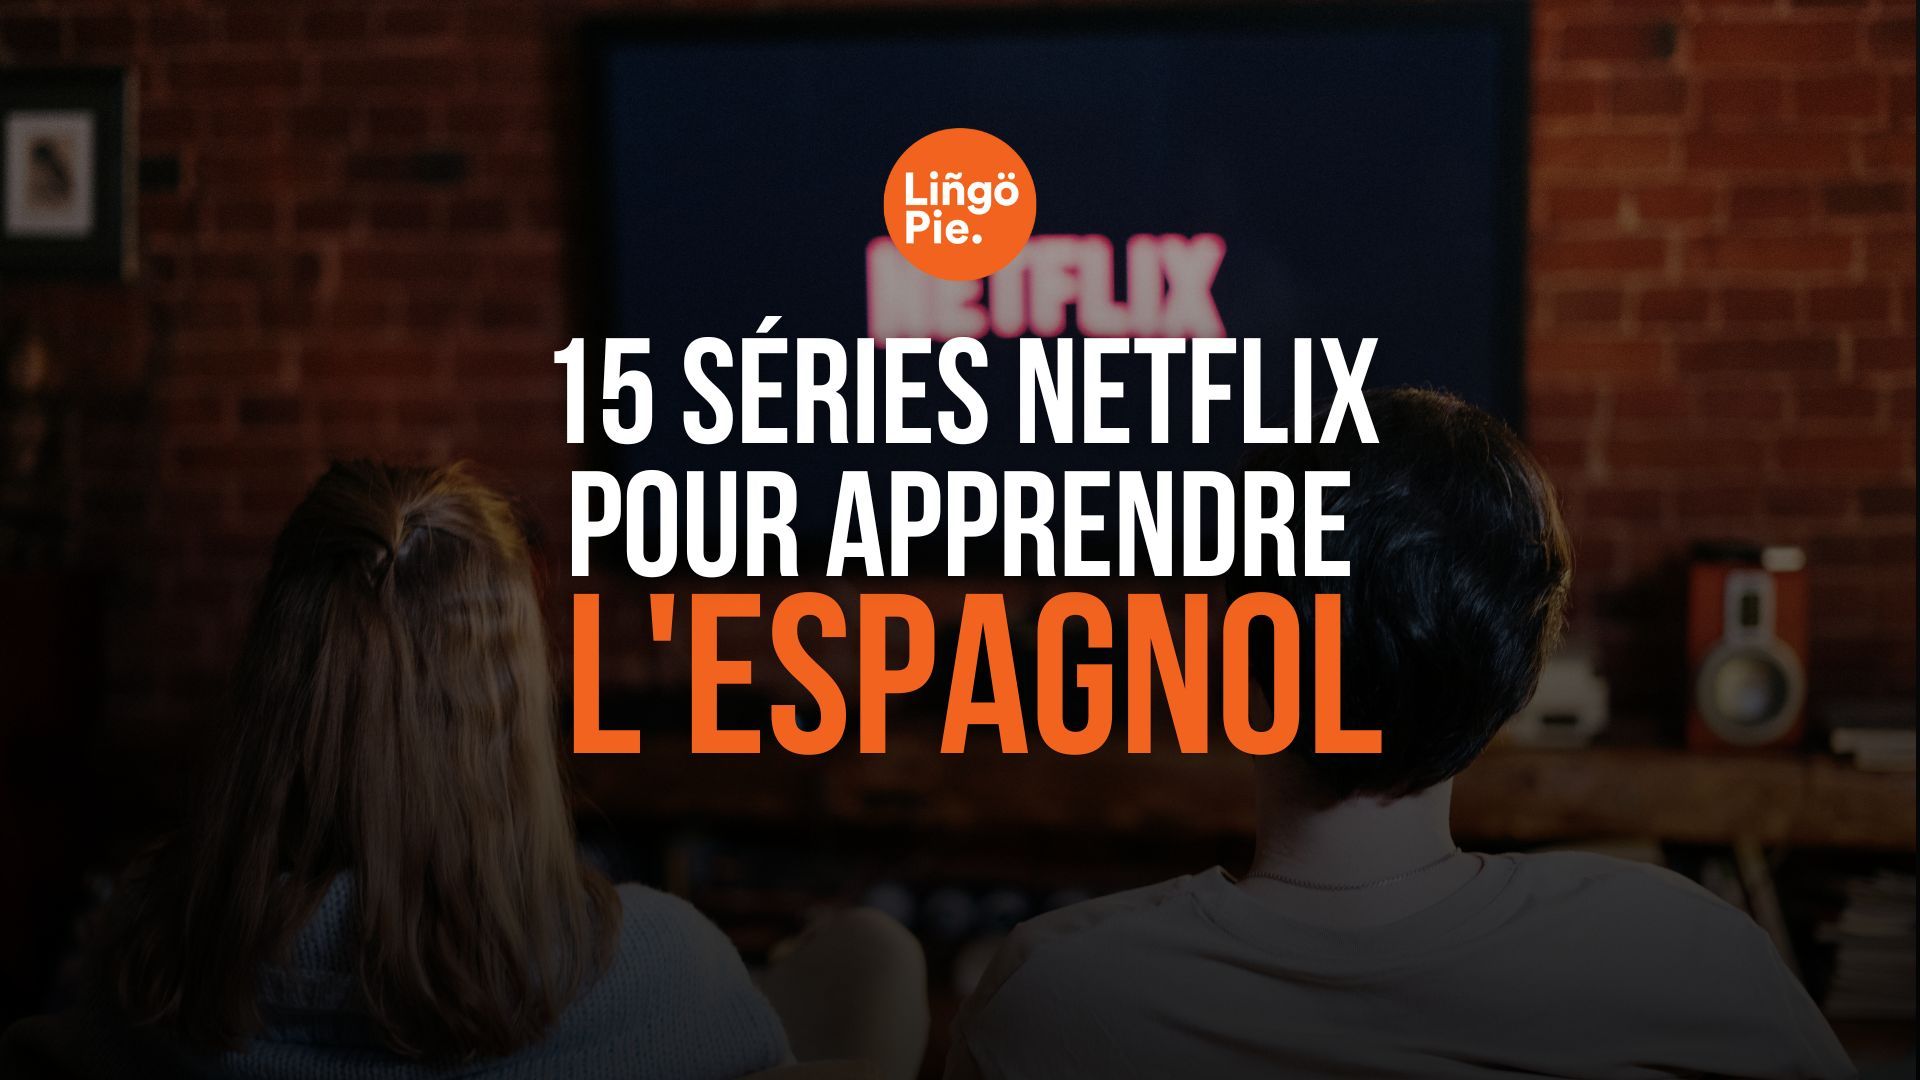 Apprendre l'espagnol avec Netflix : 15 séries incontournables